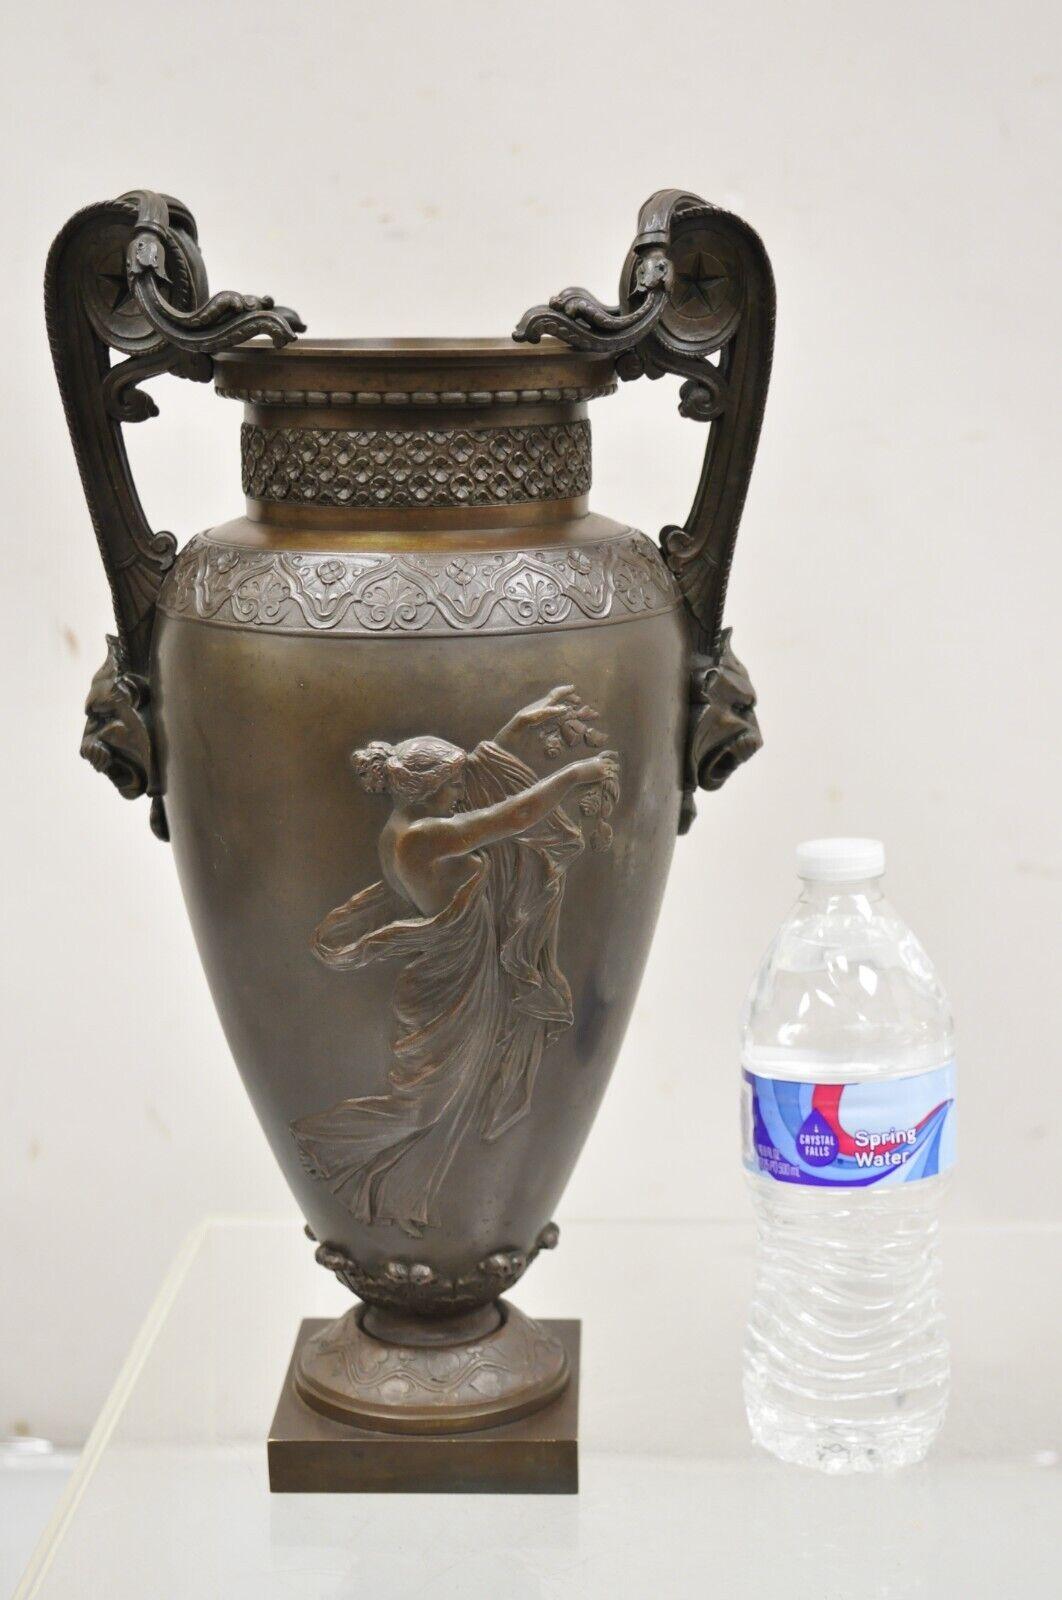 A.I.C.C. Vase Urne Figurale en Bronze avec Lions, de style néoclassique / Louis XVI, du 19ème siècle. L'objet présente des scènes de jeunes filles dansantes sur les deux côtés, des poignées en forme de tête de lion, un bronze finement coulé et une